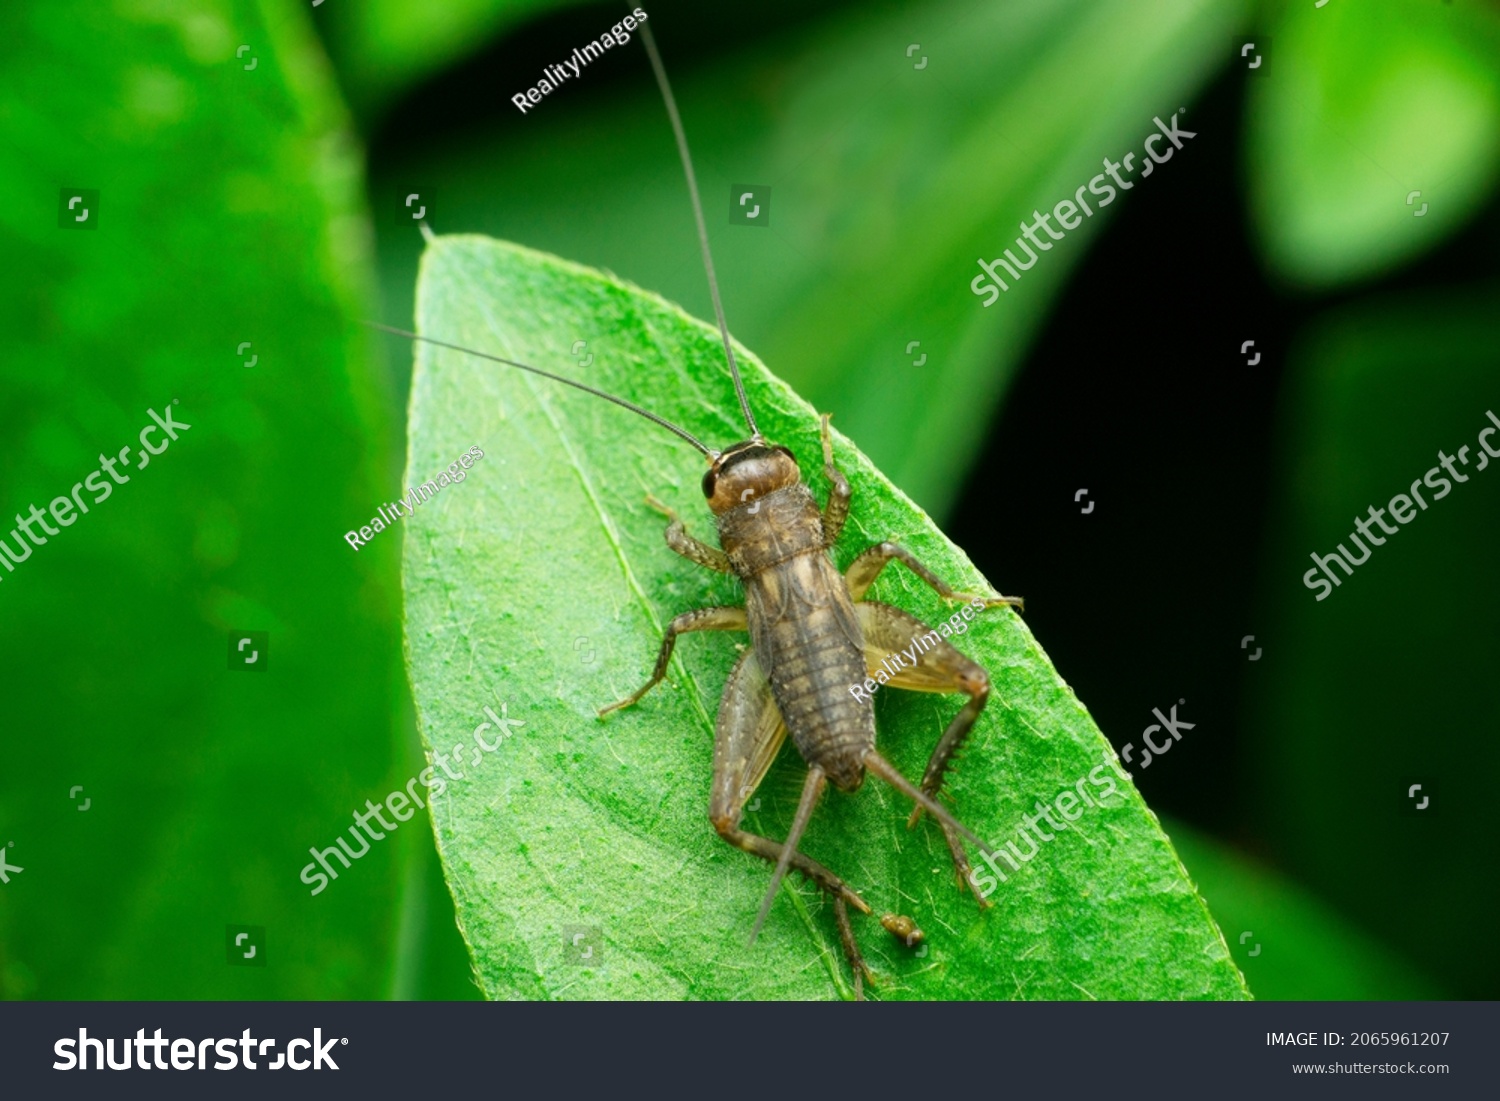 Field cricket insect, Satara, Maharashtra, India #2065961207